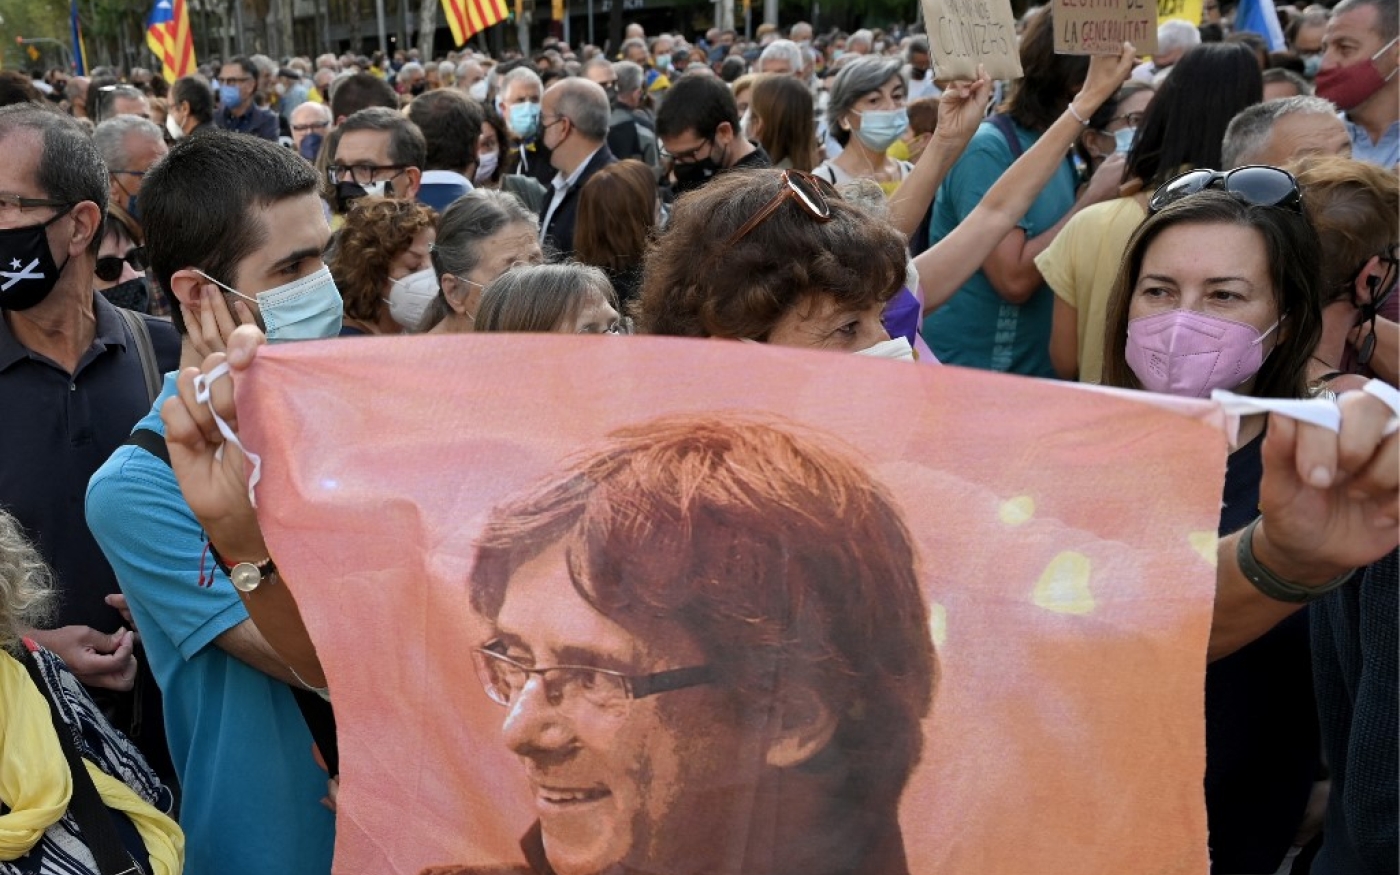 Un manifestant tient un portrait de Carles Puigdemont lors d’une manifestation devant le consulat italien à Barcelone le 24 septembre 2021 après l’arrestation en Italie de l’ancien président catalan exilé (AFP/Lluis Gene)